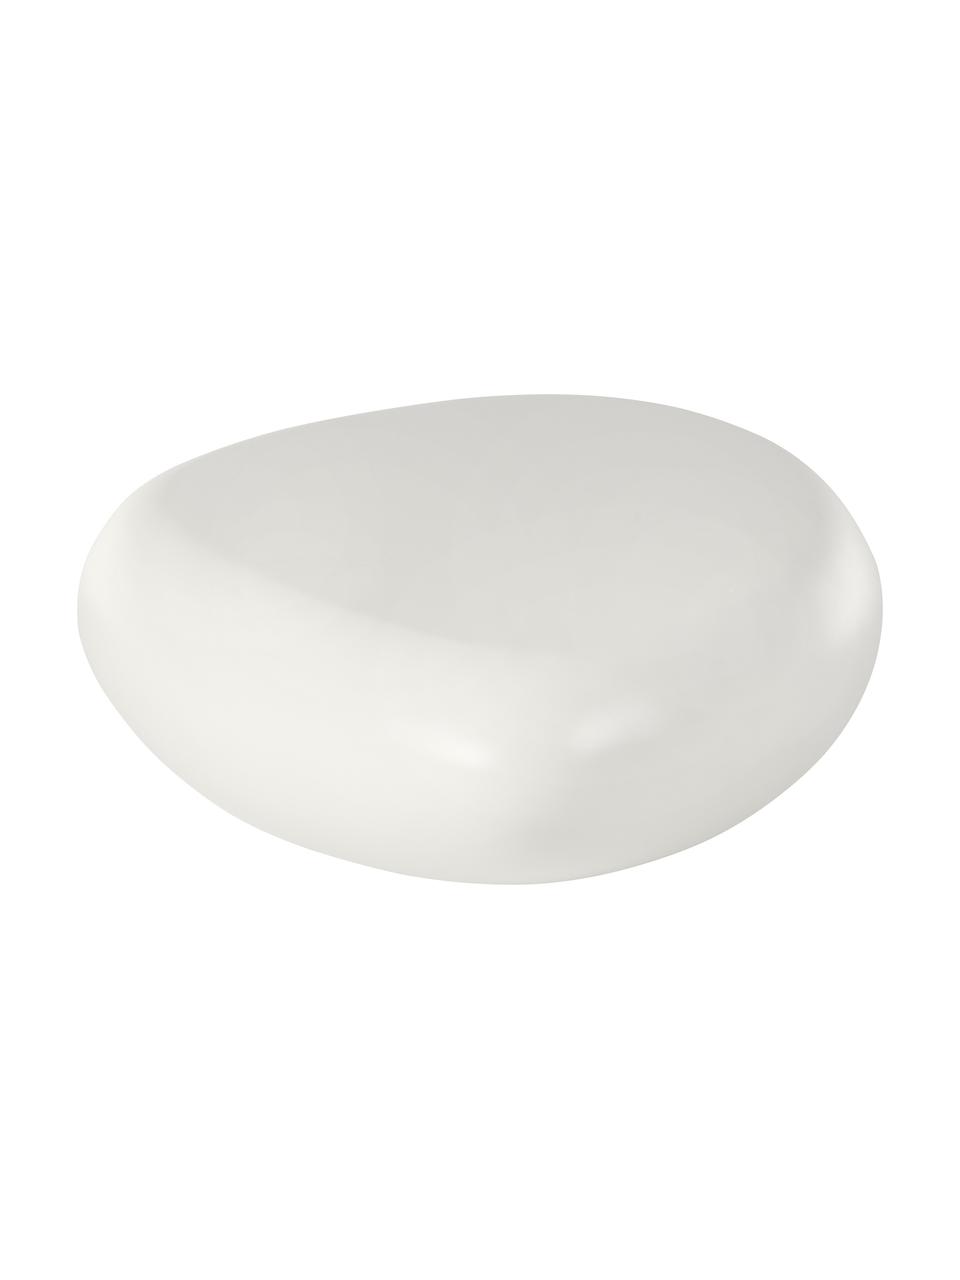 Couchtisch Pietra in Stein-Form, weiß, Glasfaserkunststoff, kratzfest lackiert, Weiß, 116 x 28 cm